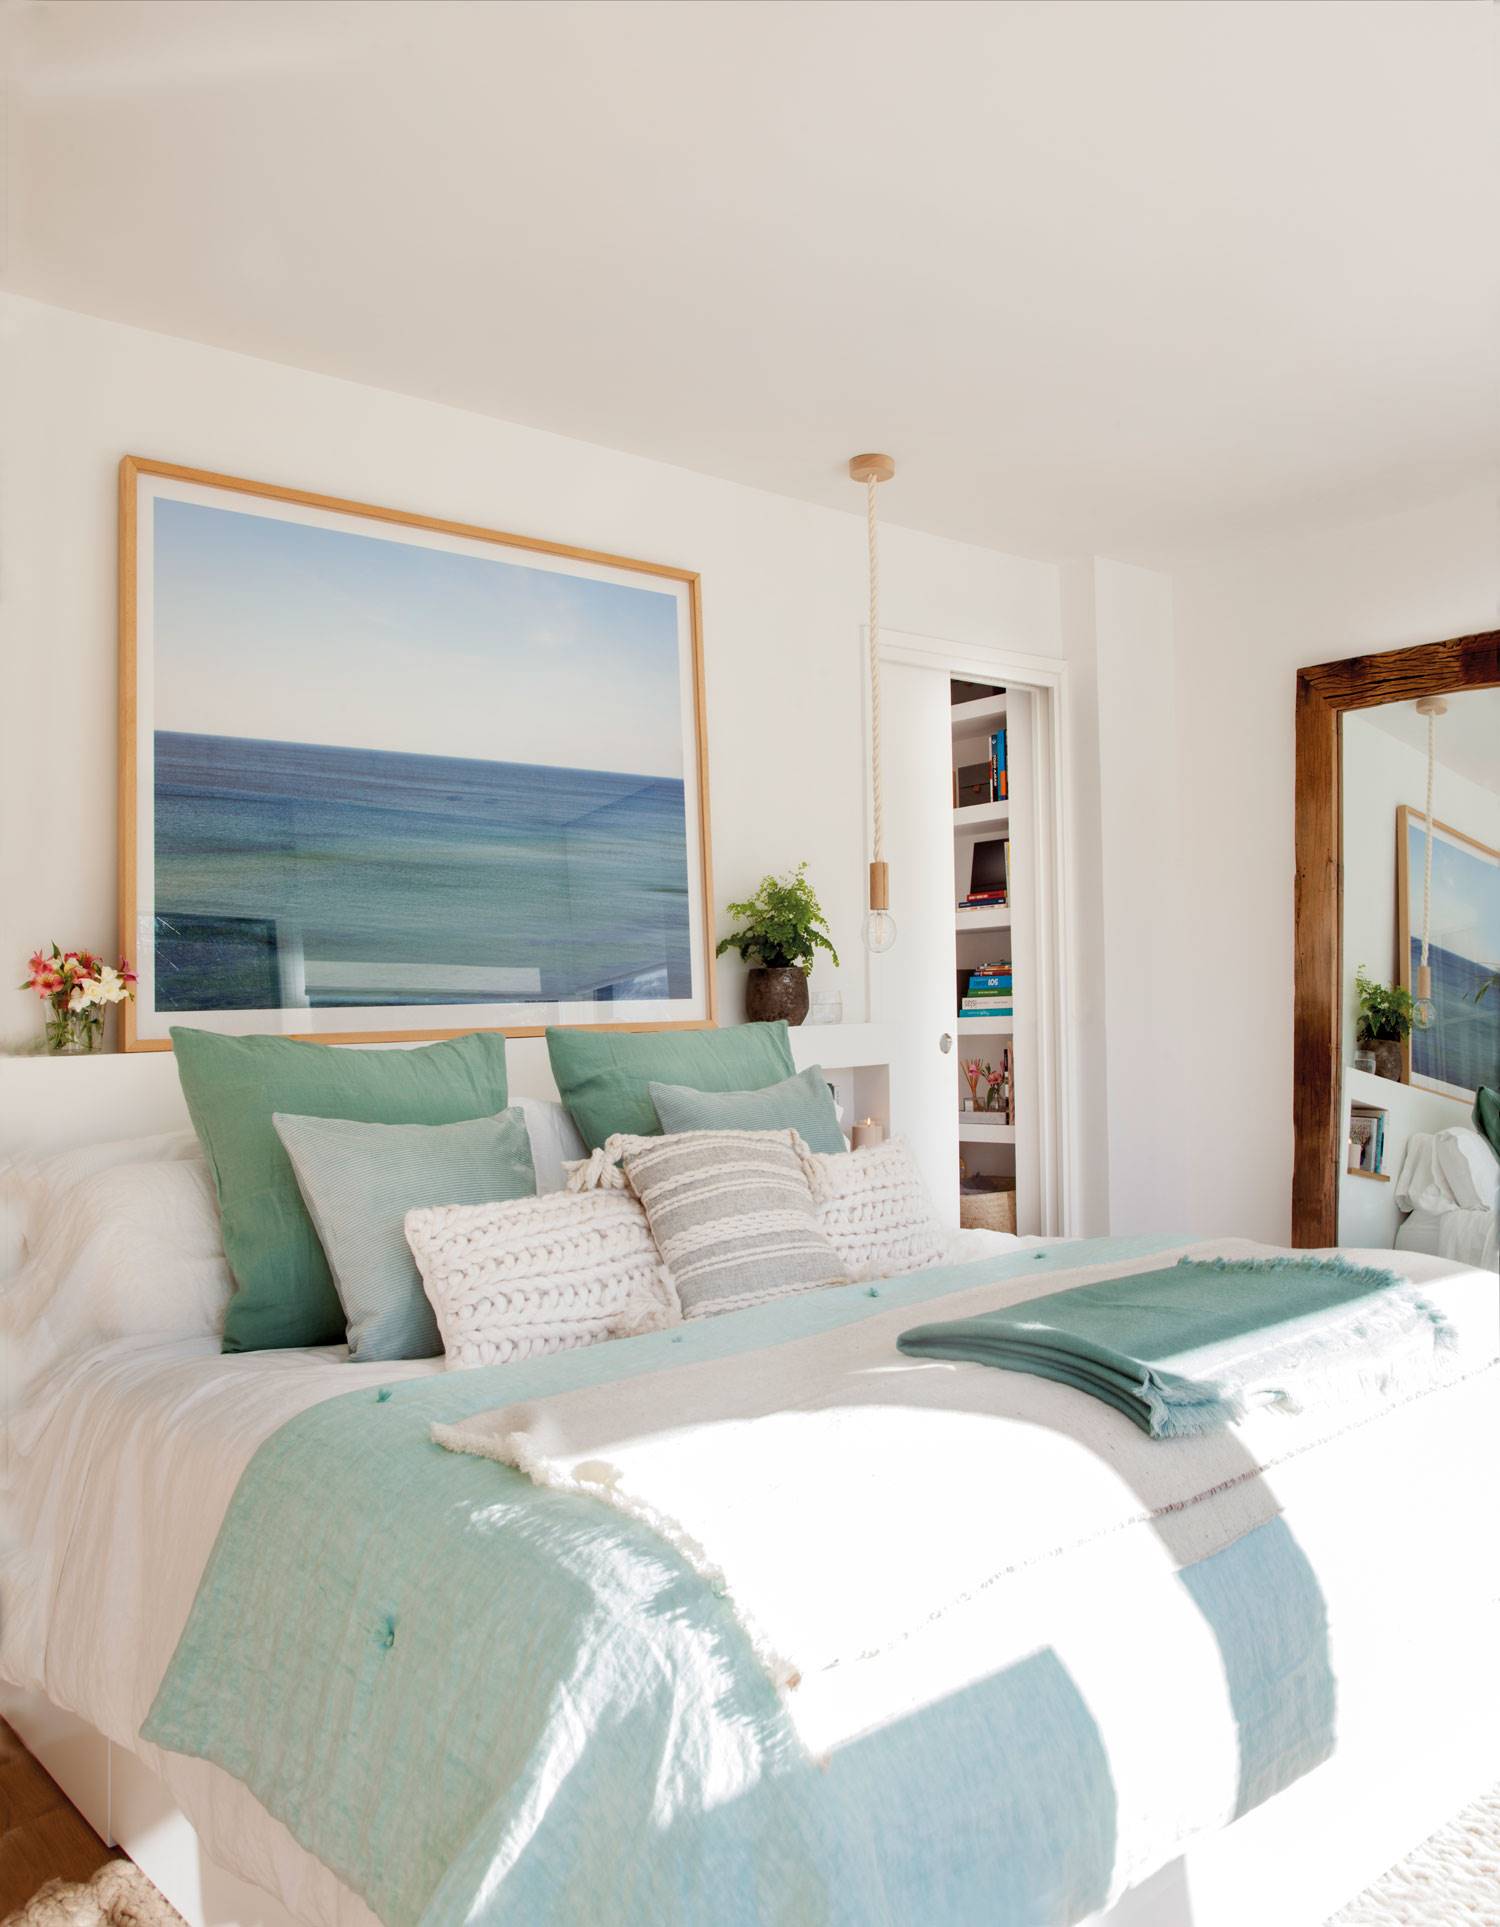 Dormitorio con cabecero de obra blanco y hornacinas, un cuadro grande de un paisaje marino y lámparas suspendidas.